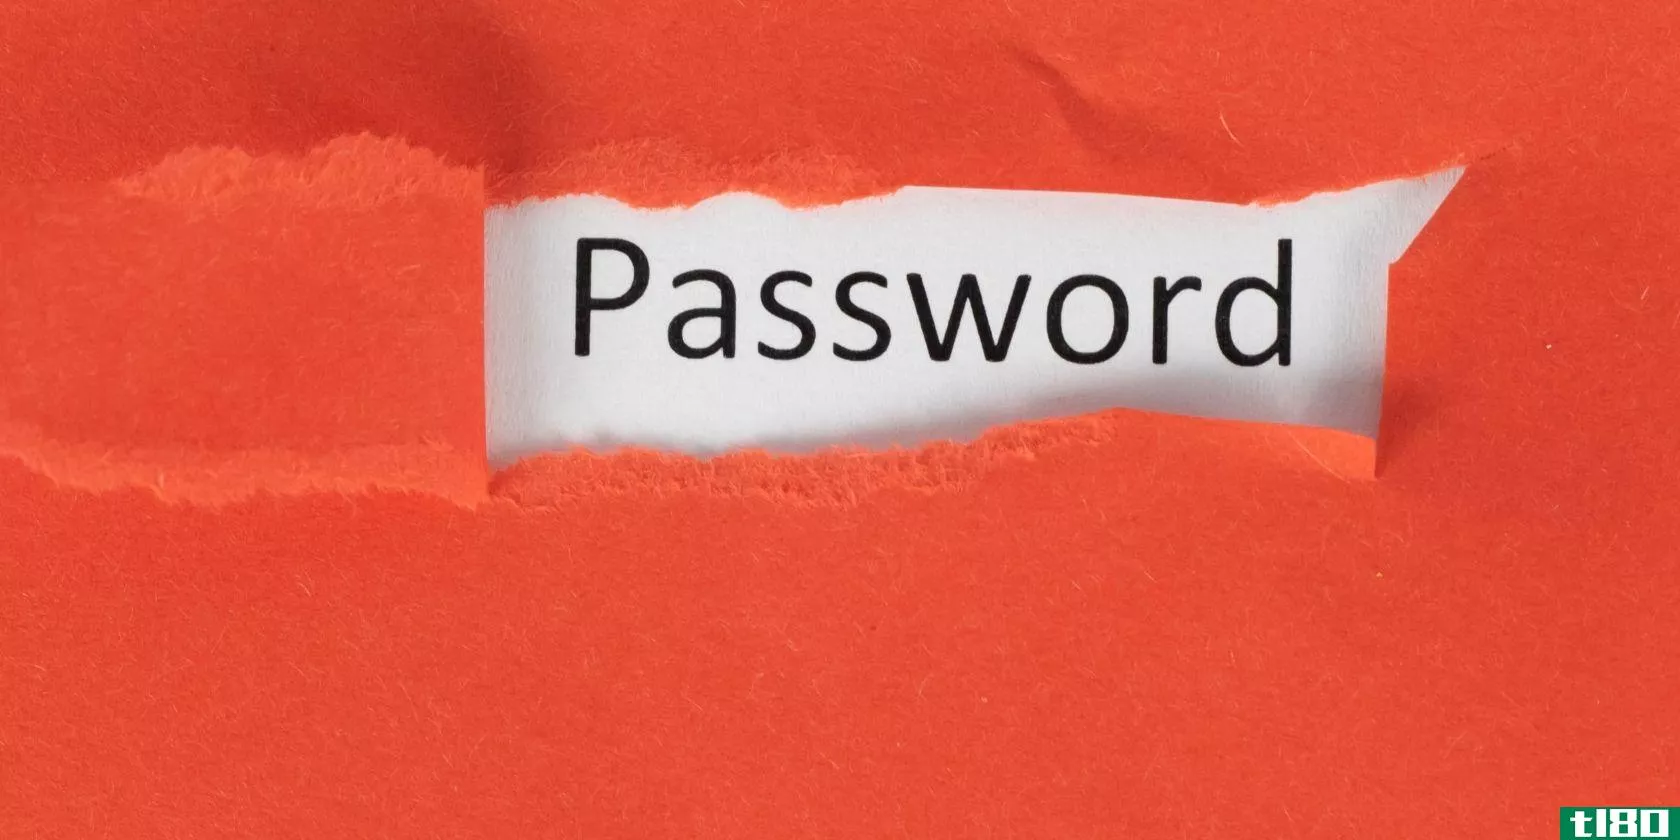 hidden-password-exposed